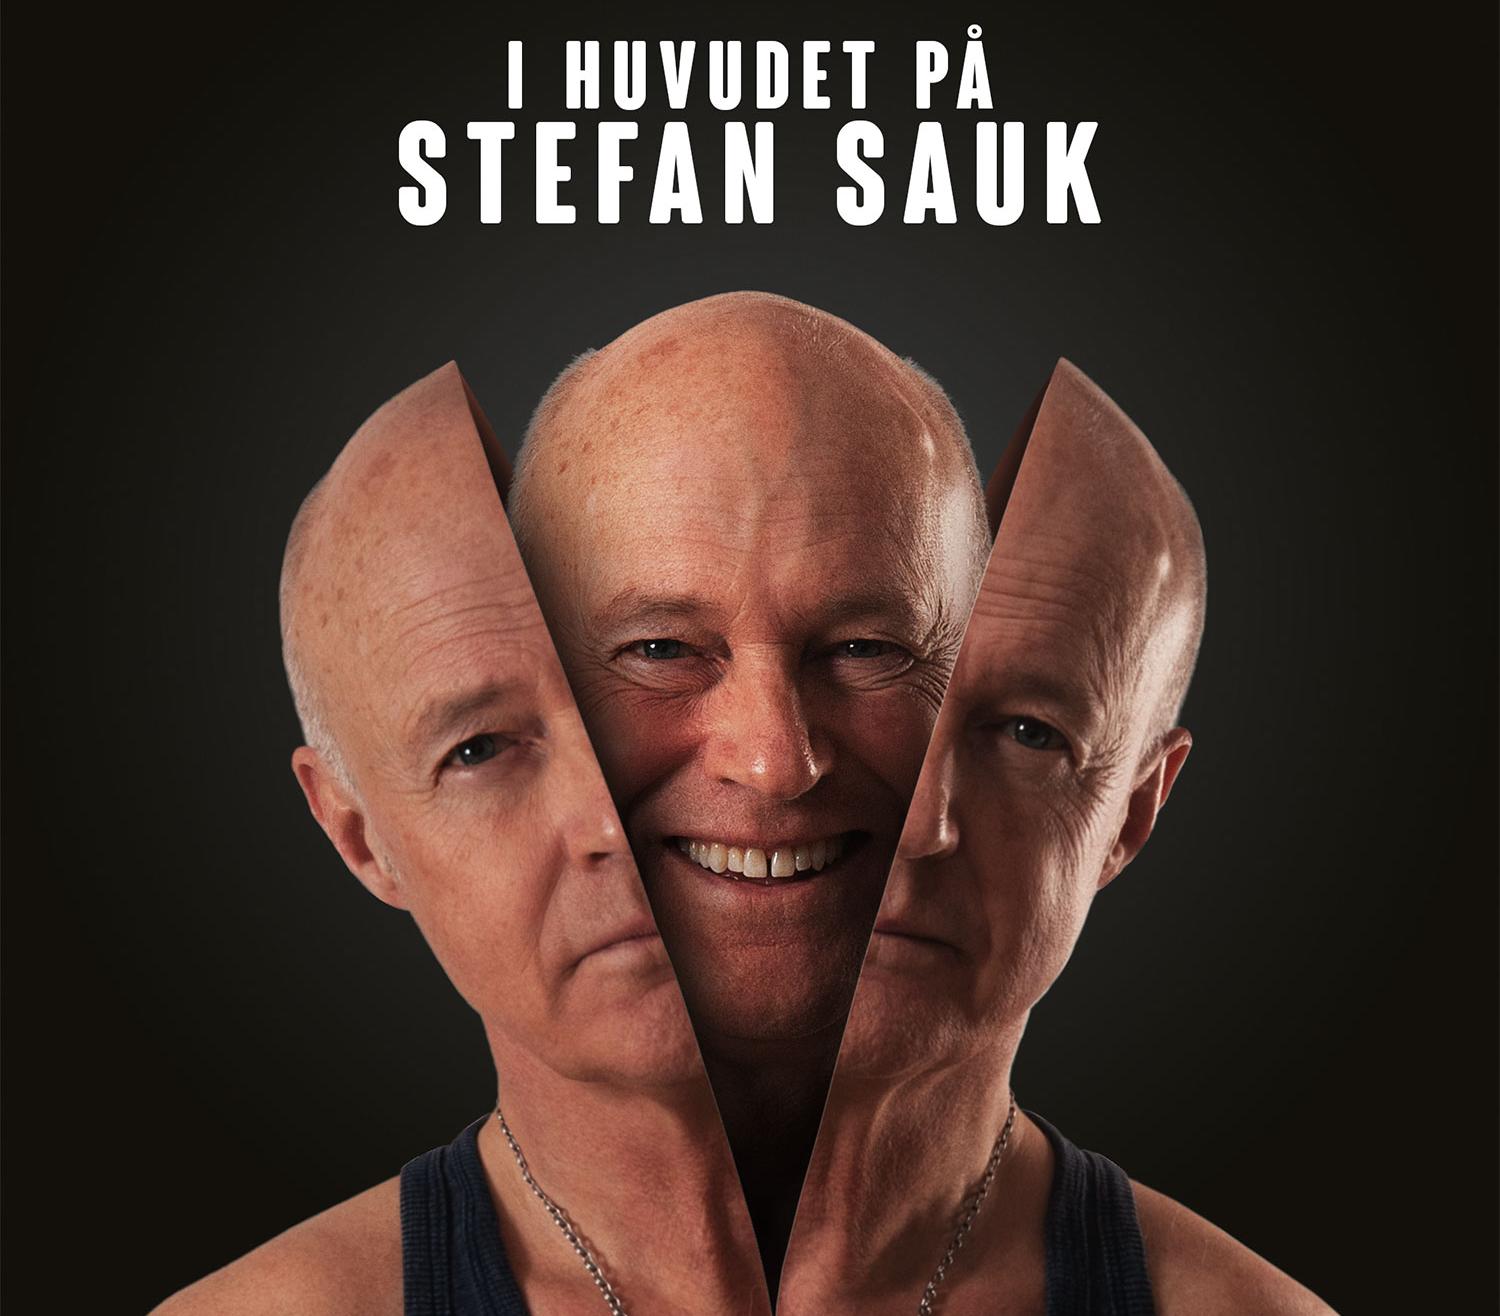 ”I huvudet på Stefan Sauk”.